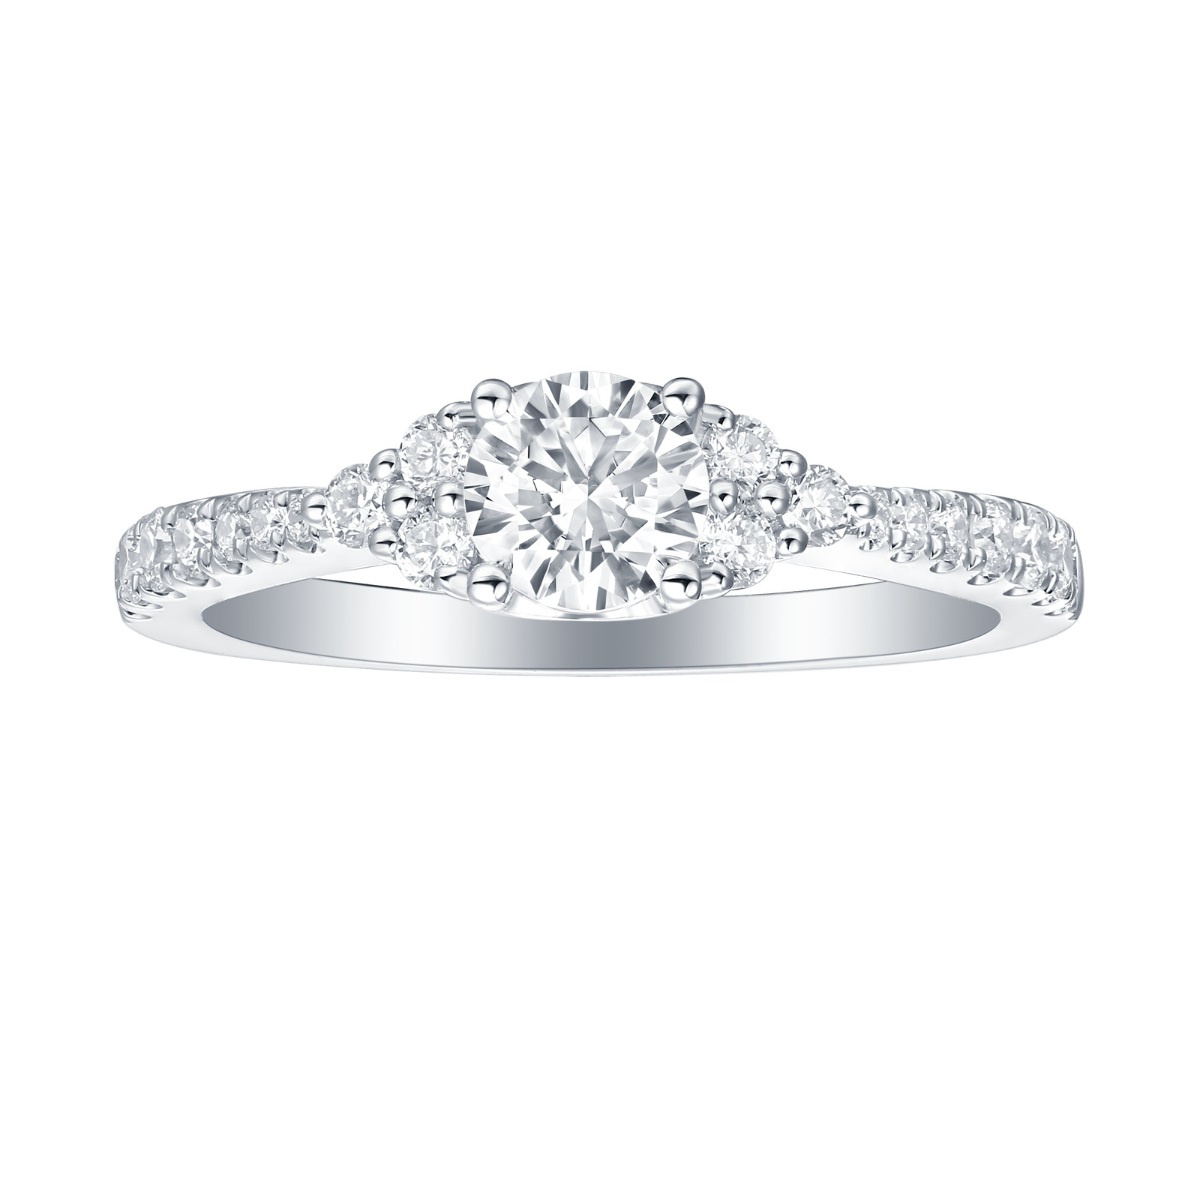 R35877WHT – 18K White Gold Diamond Ring, 1.36 TCW